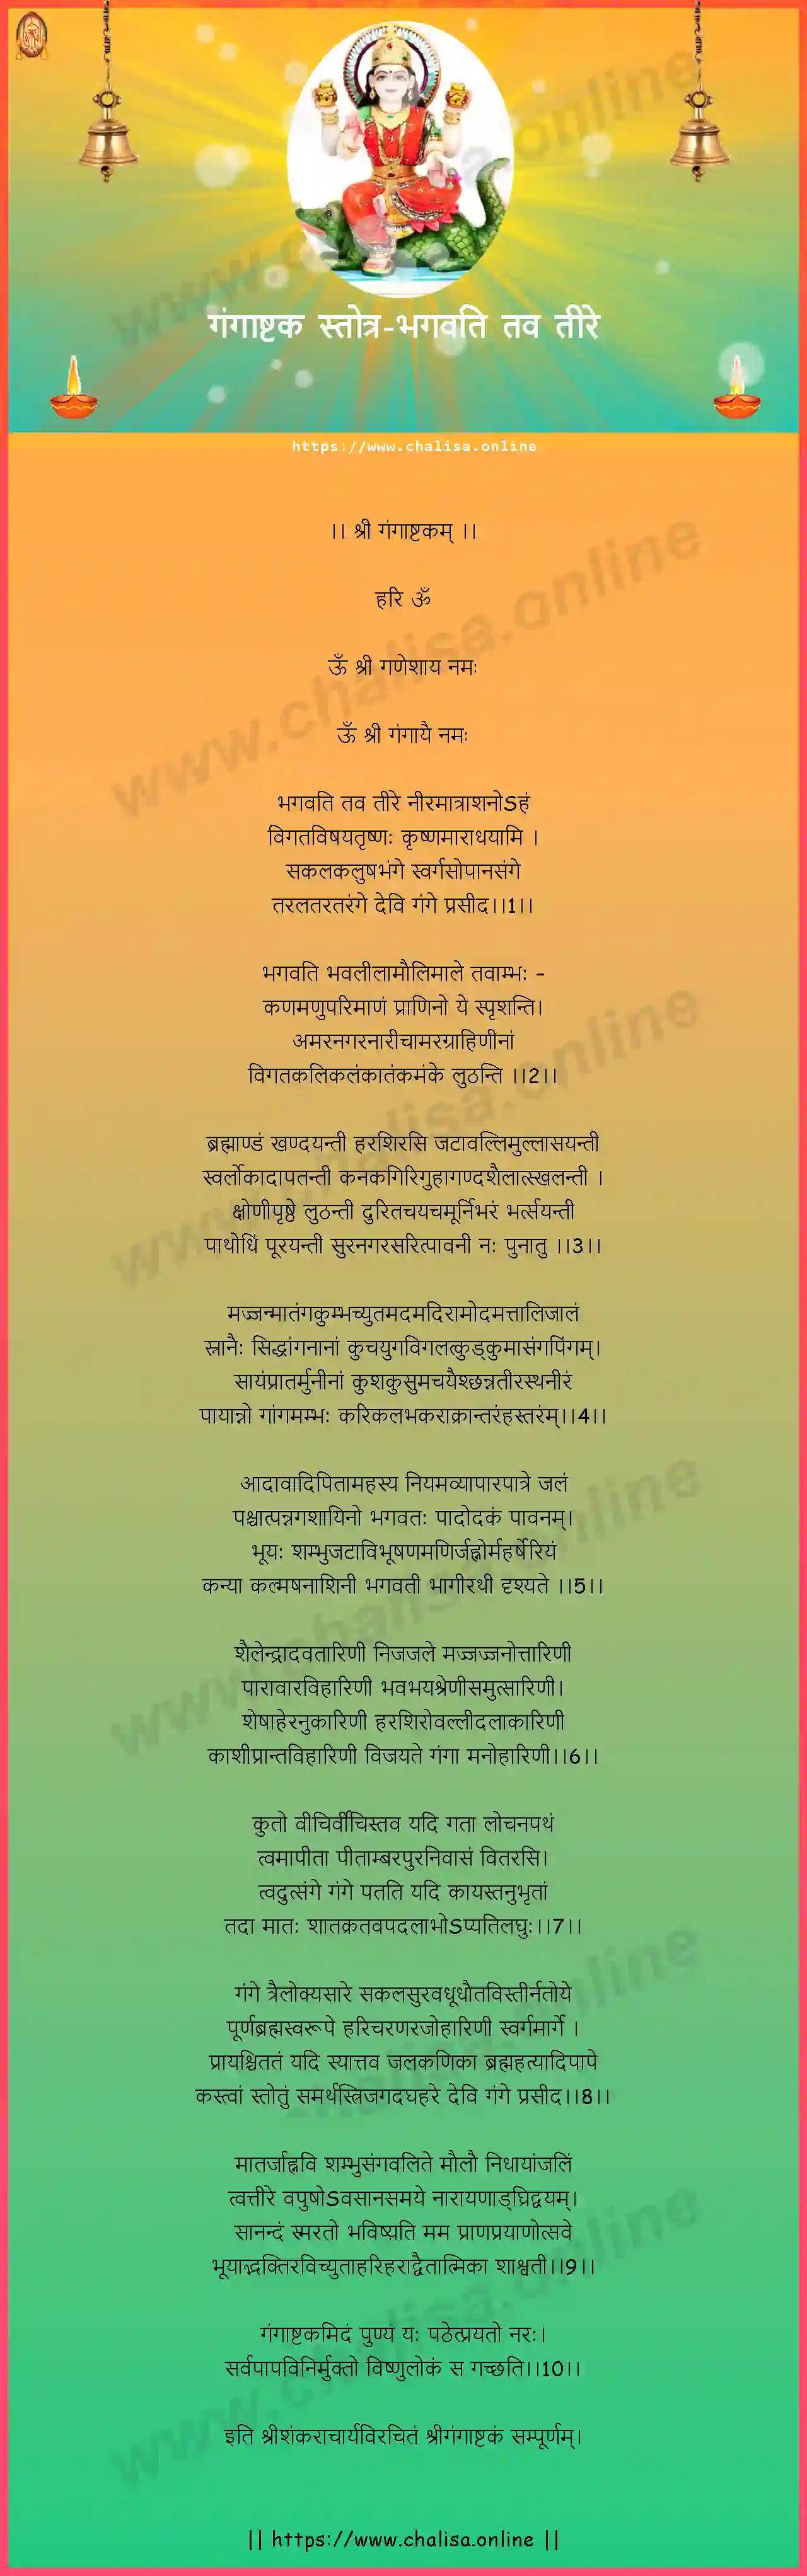 bhagwati-tav-teere-ganga-ashtak-stotra-marathi-lyrics-download